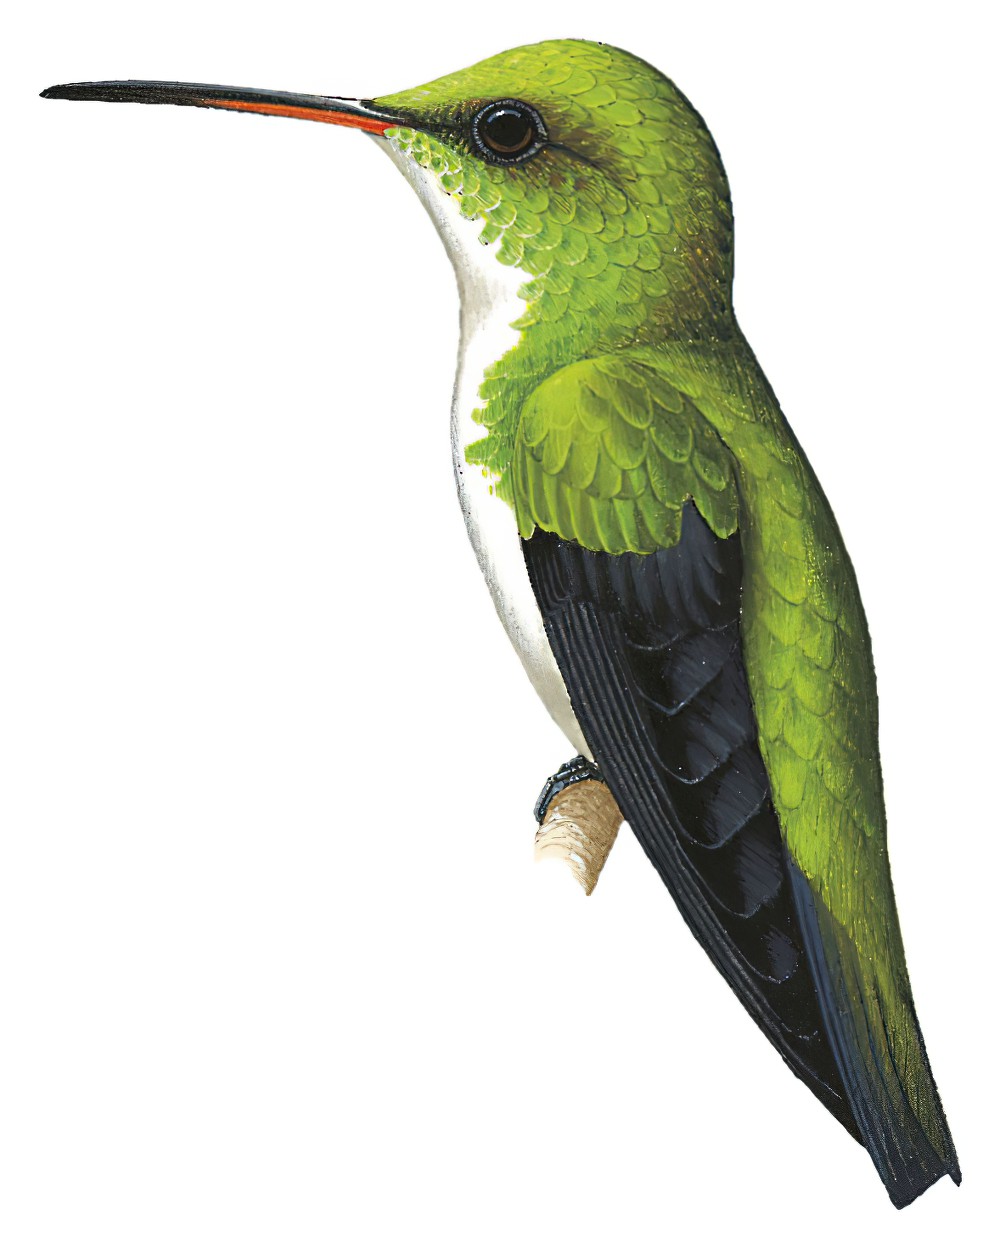 Plain-bellied Emerald / Amazilia leucogaster